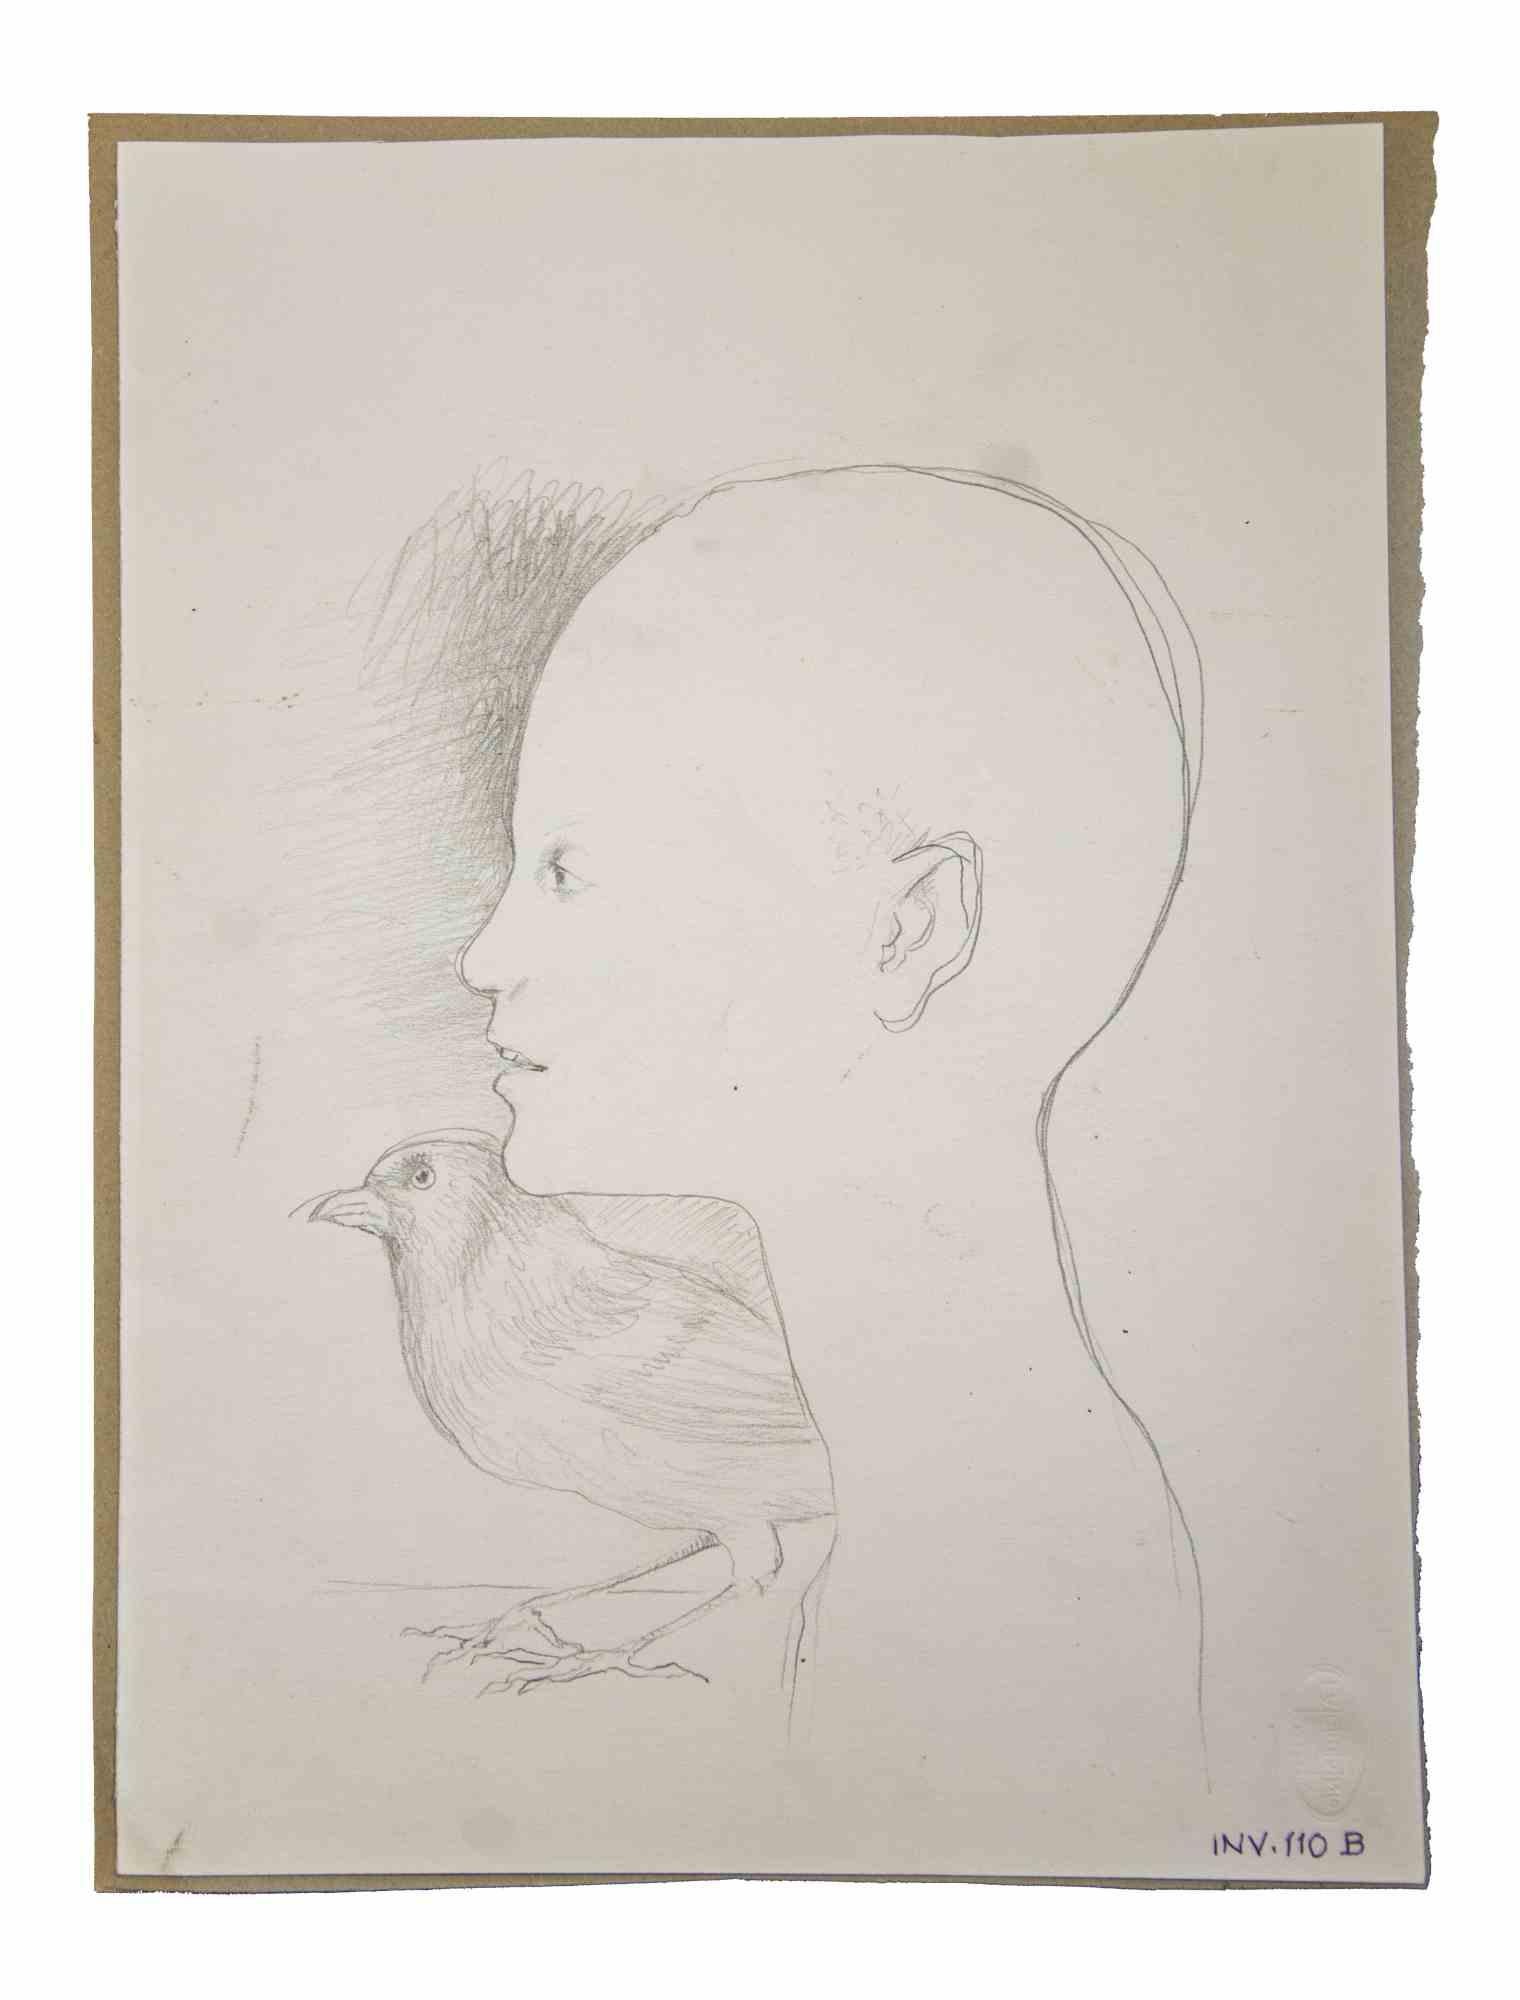 Boy and Bird ist ein originales zeitgenössisches Kunstwerk, das 1970 von dem italienischen zeitgenössischen Künstler  Leo Guida  (1992 - 2017).

Originalzeichnung in Bleistift auf elfenbeinfarbenem Papier, auf Karton geklebt (35 x 26 cm).

Gute